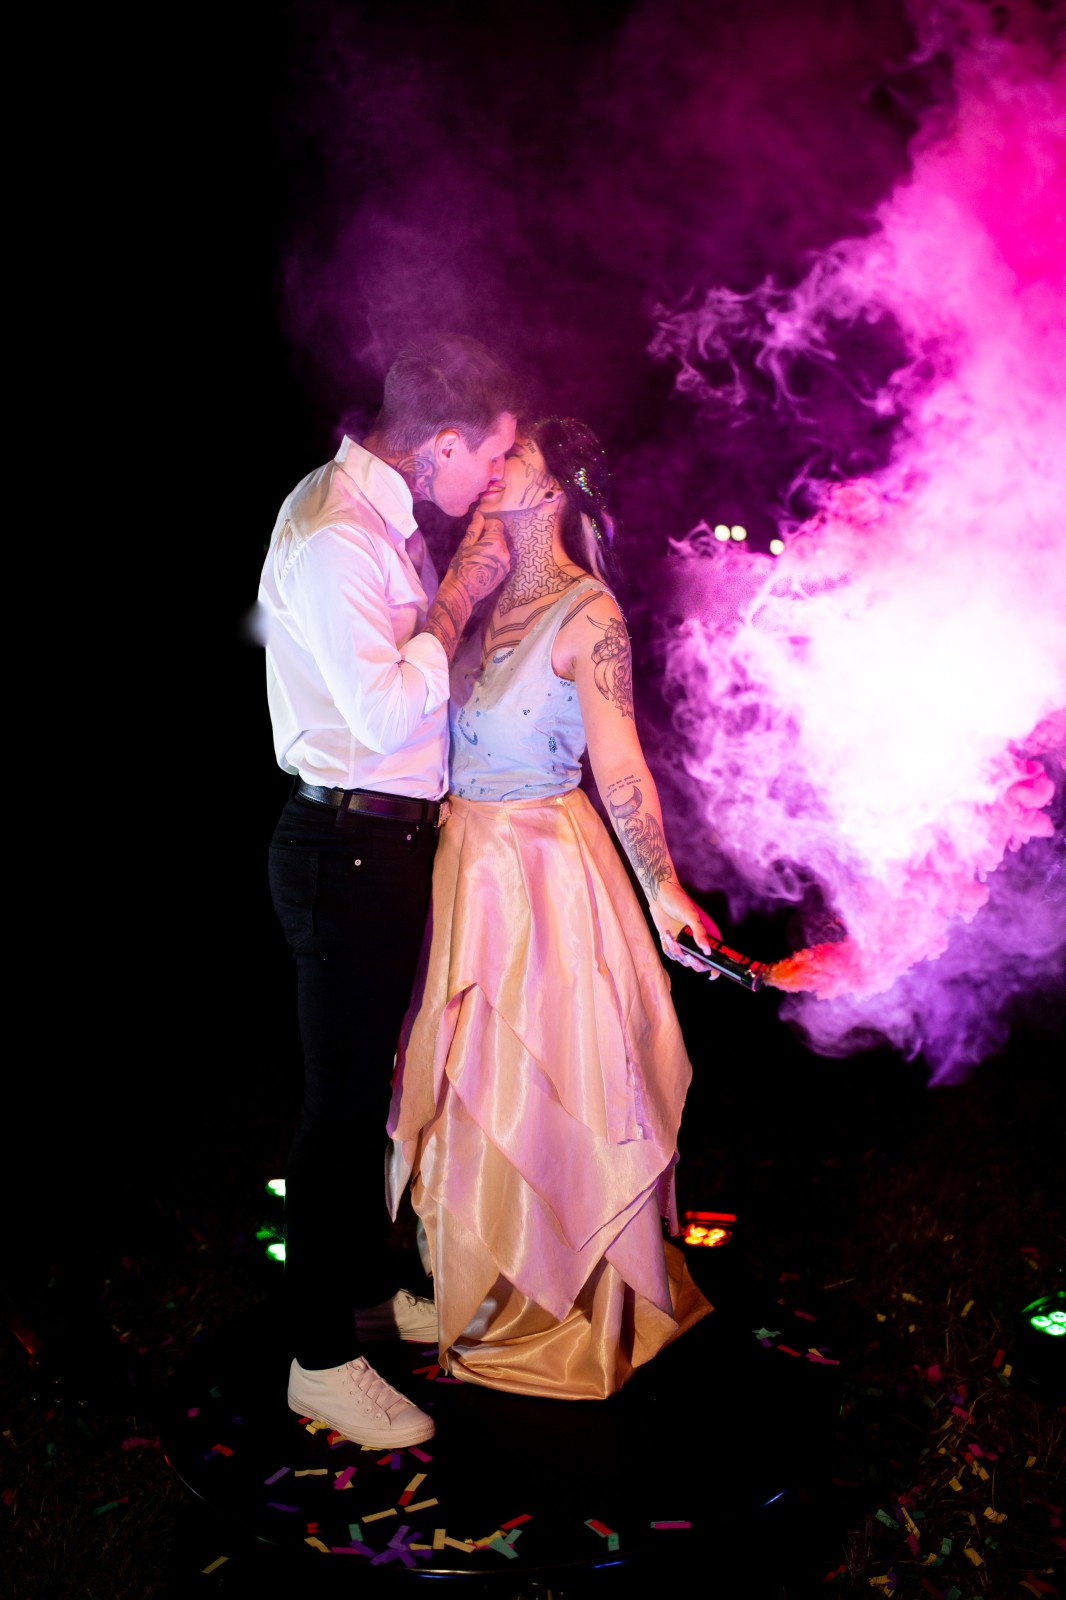 rainbow festival wedding - smoke bomb wedding photo - bride and groom with pink smoke bomb